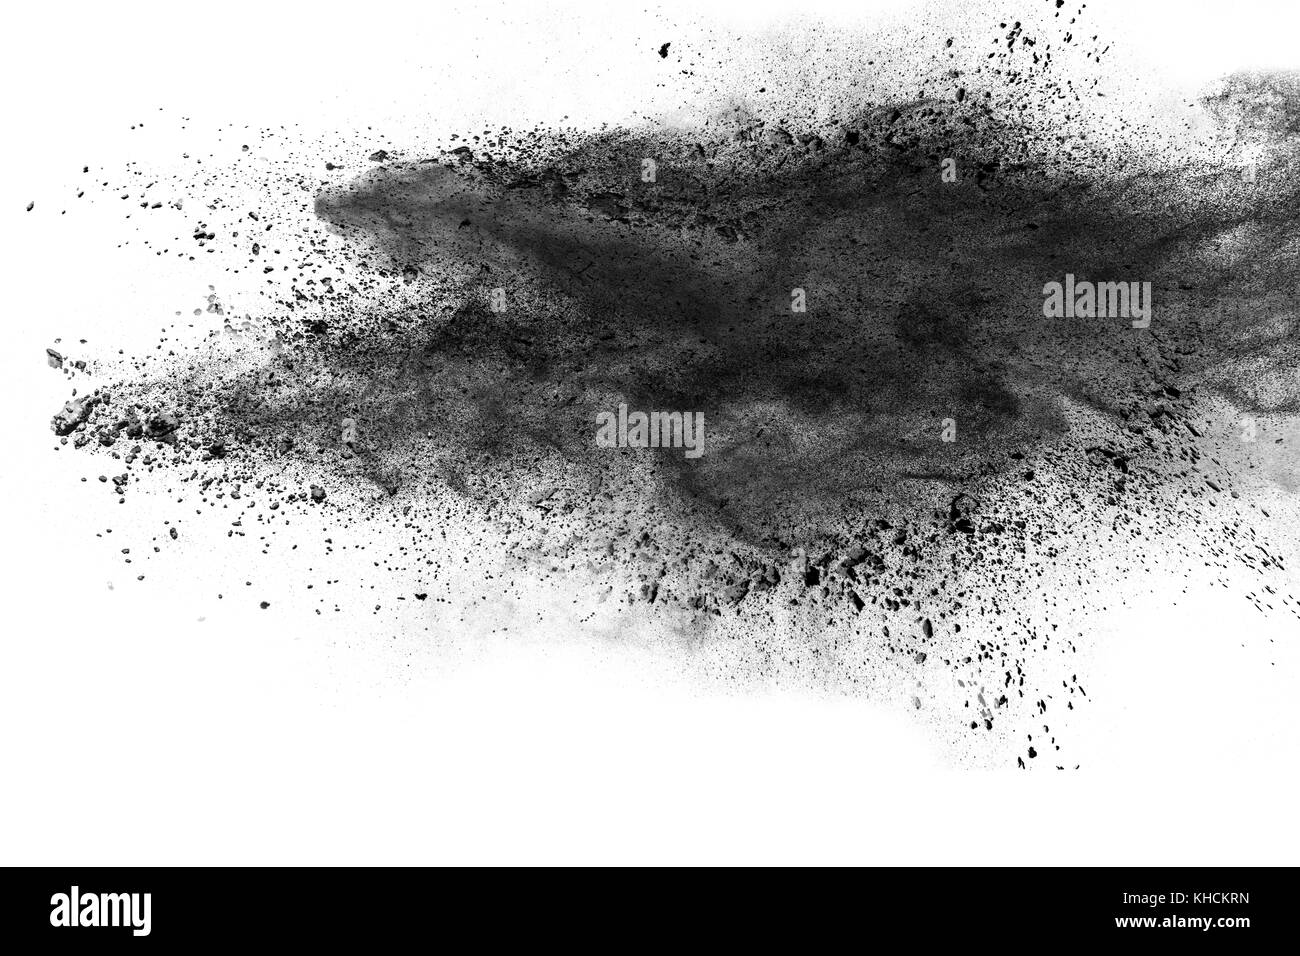 Résumé d'explosion de poussière noire sur fond blanc. Banque D'Images